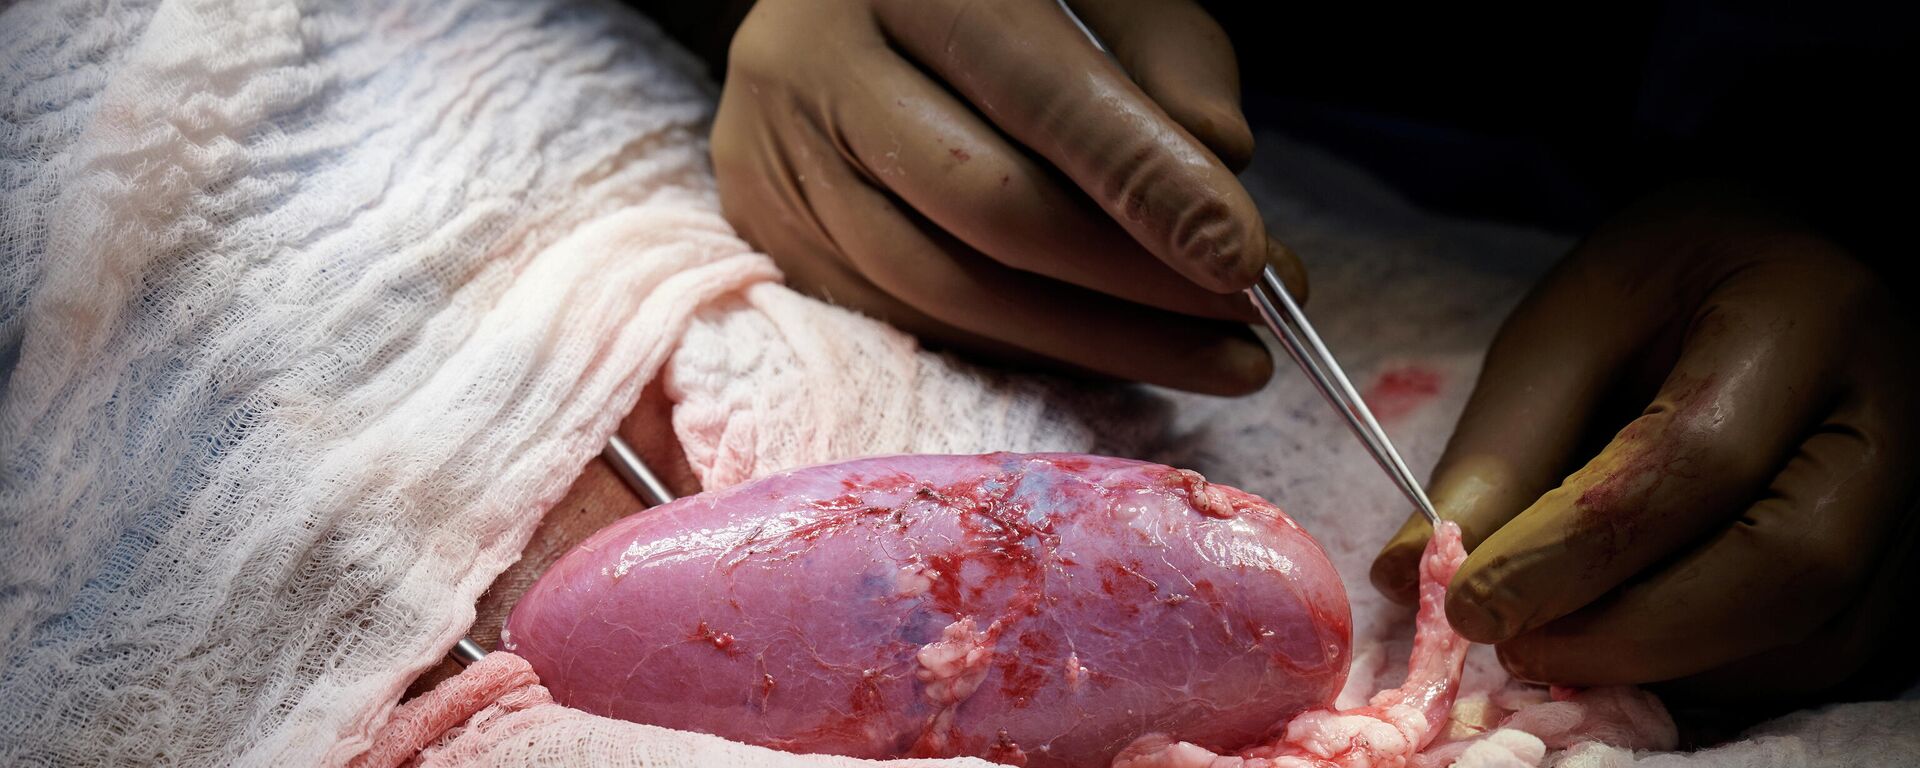 ABD'nin New York Üniversitesi (NYU) Langone Hastanesi'ndeki cerrahlar, hayvandan insana organ nakli için dokuları derhal reddedilme reaksiyonu tetikleyen molekülü içermeyecek şekilde genetiği değiştirilen bir domuzun böbreğini kullandı. Yeni böbrek üç gün boyunca kan damarlarına bağlanıp vücudun dışında tutularak araştırmacıların erişimine açık bırakıldı. - Sputnik Türkiye, 1920, 20.10.2021